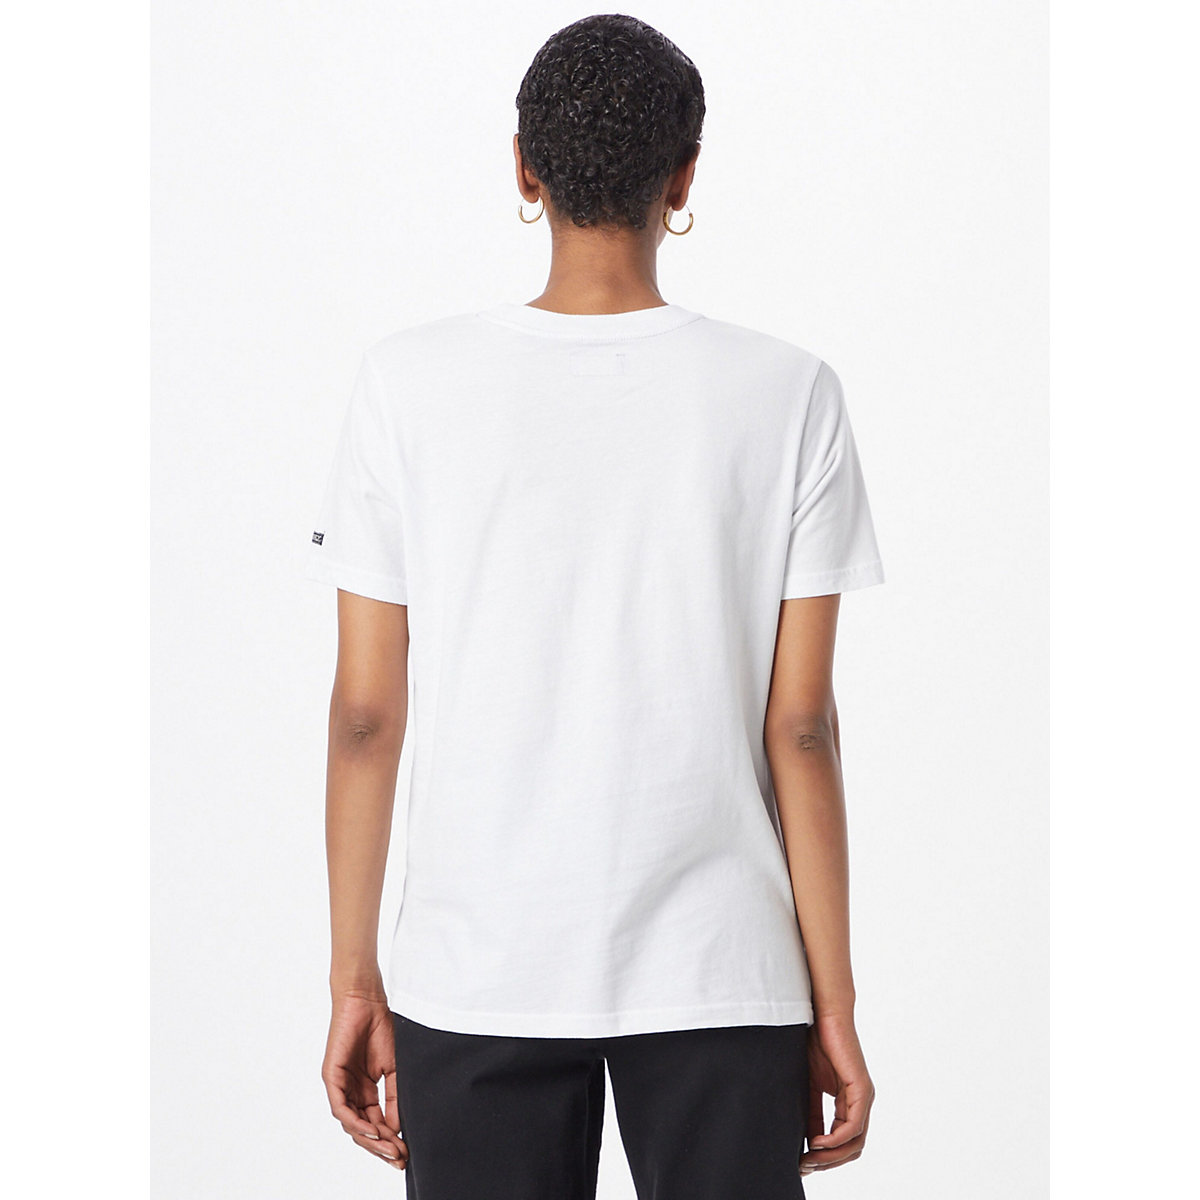 Superdry Shirt schwarz/weiß OY5749